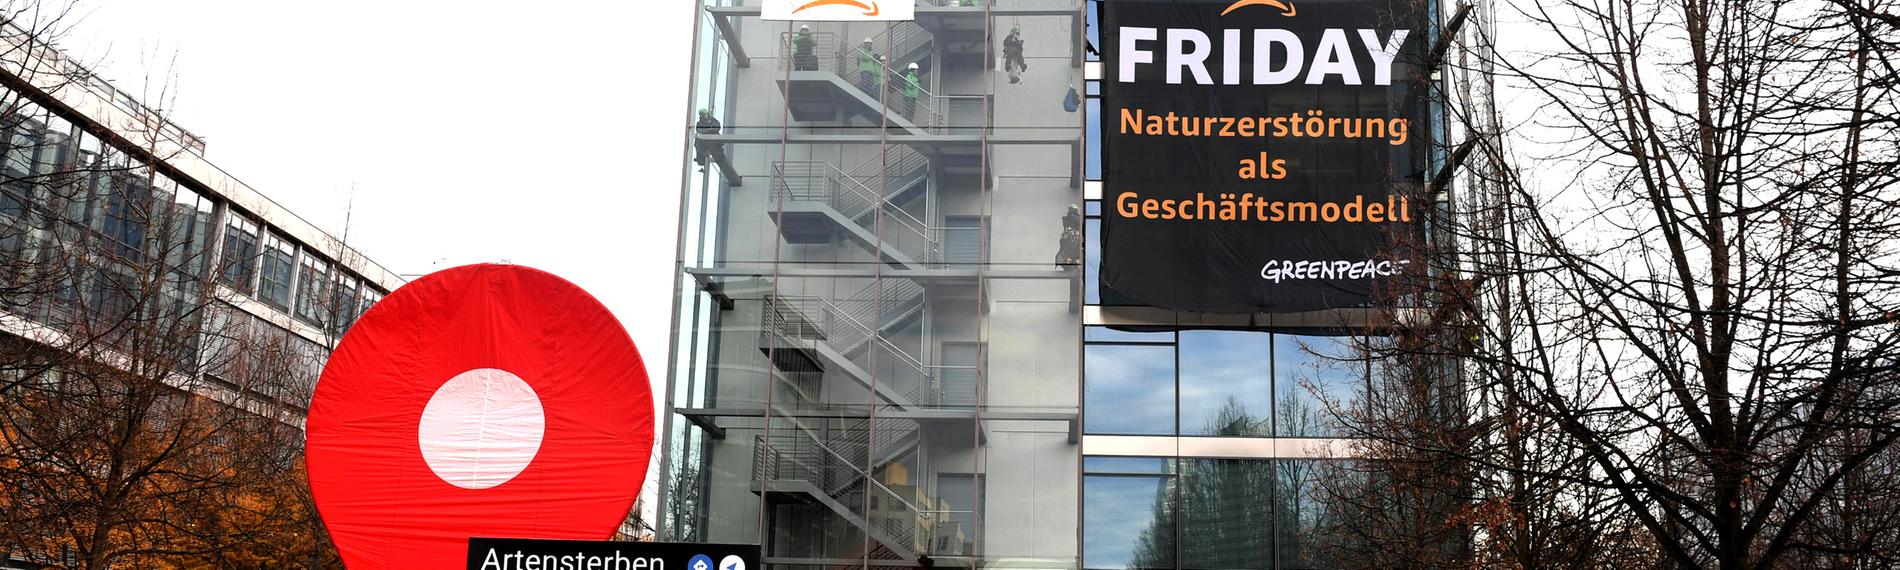 Greenpeace-Aktive protestieren während der Rabattaktion Black Friday gegen die Ressourcenverschwendung des Online-Versandhändlers Amazon am Amazon Deutschland Gebäude und hängen dort Plakate auf mit der Aufschrift "crime" und "Black Friday - Naturzerstörung als Geschäftsmodell".